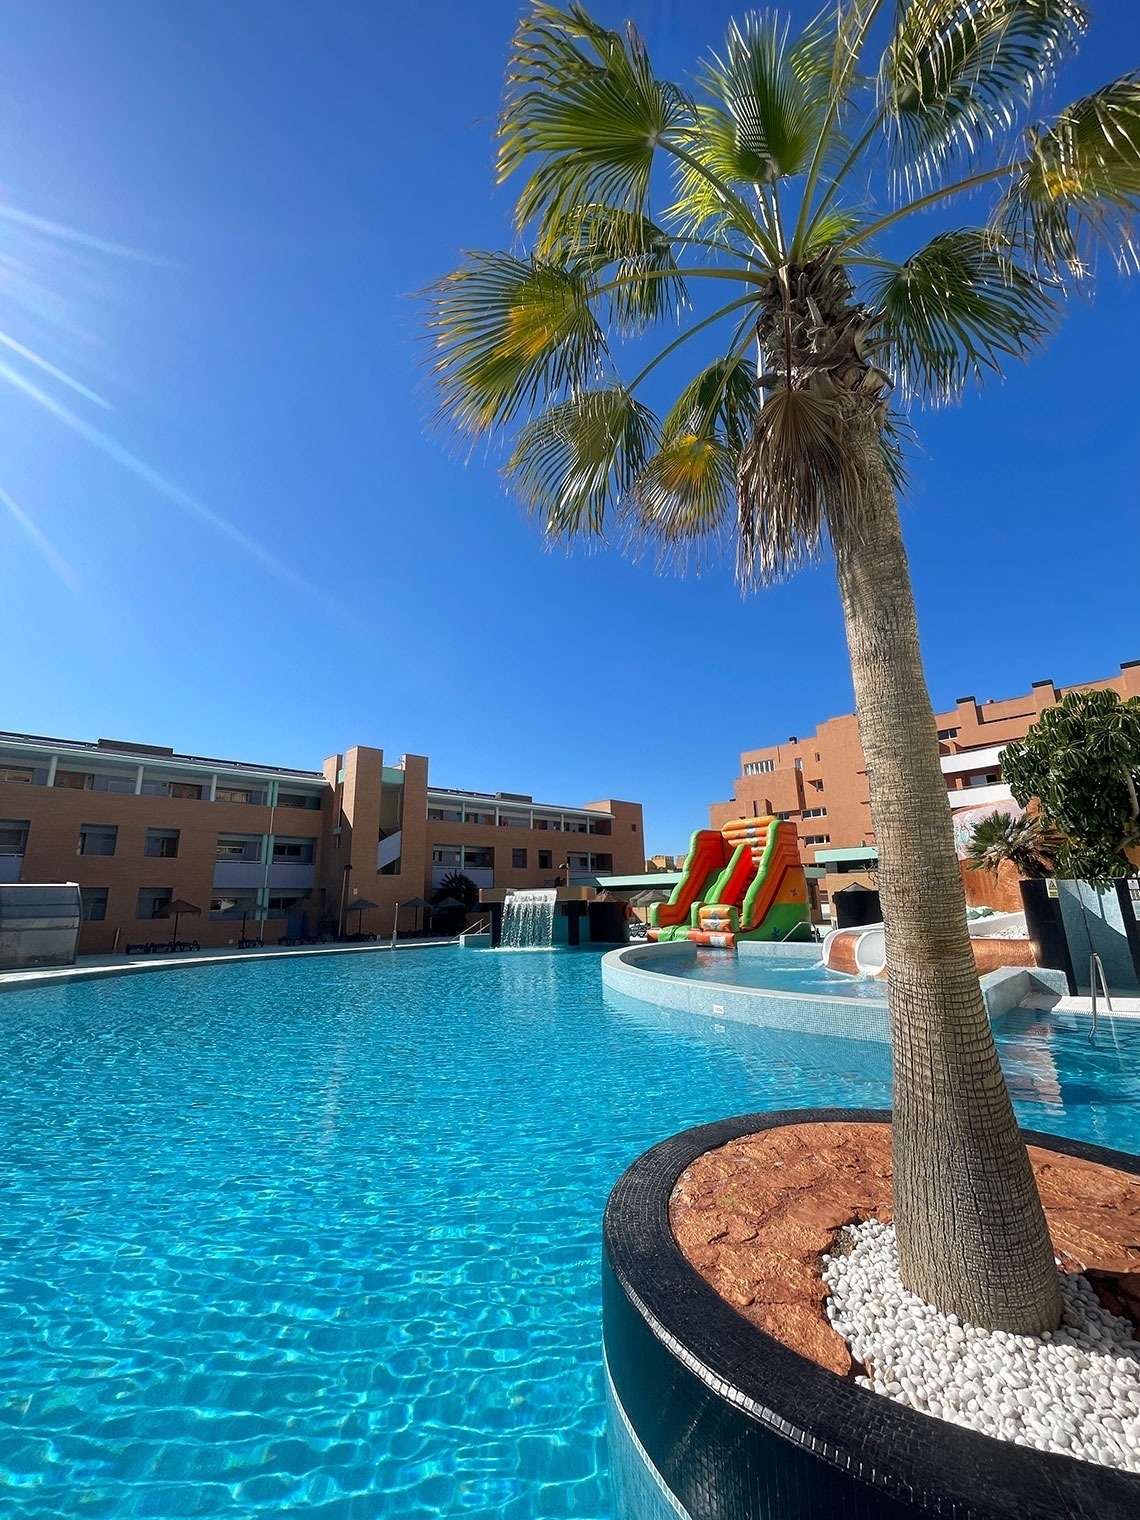 Oferta hotel con niños gratis en Roquetas de Mar. 3 noches pensión completa desde 258€